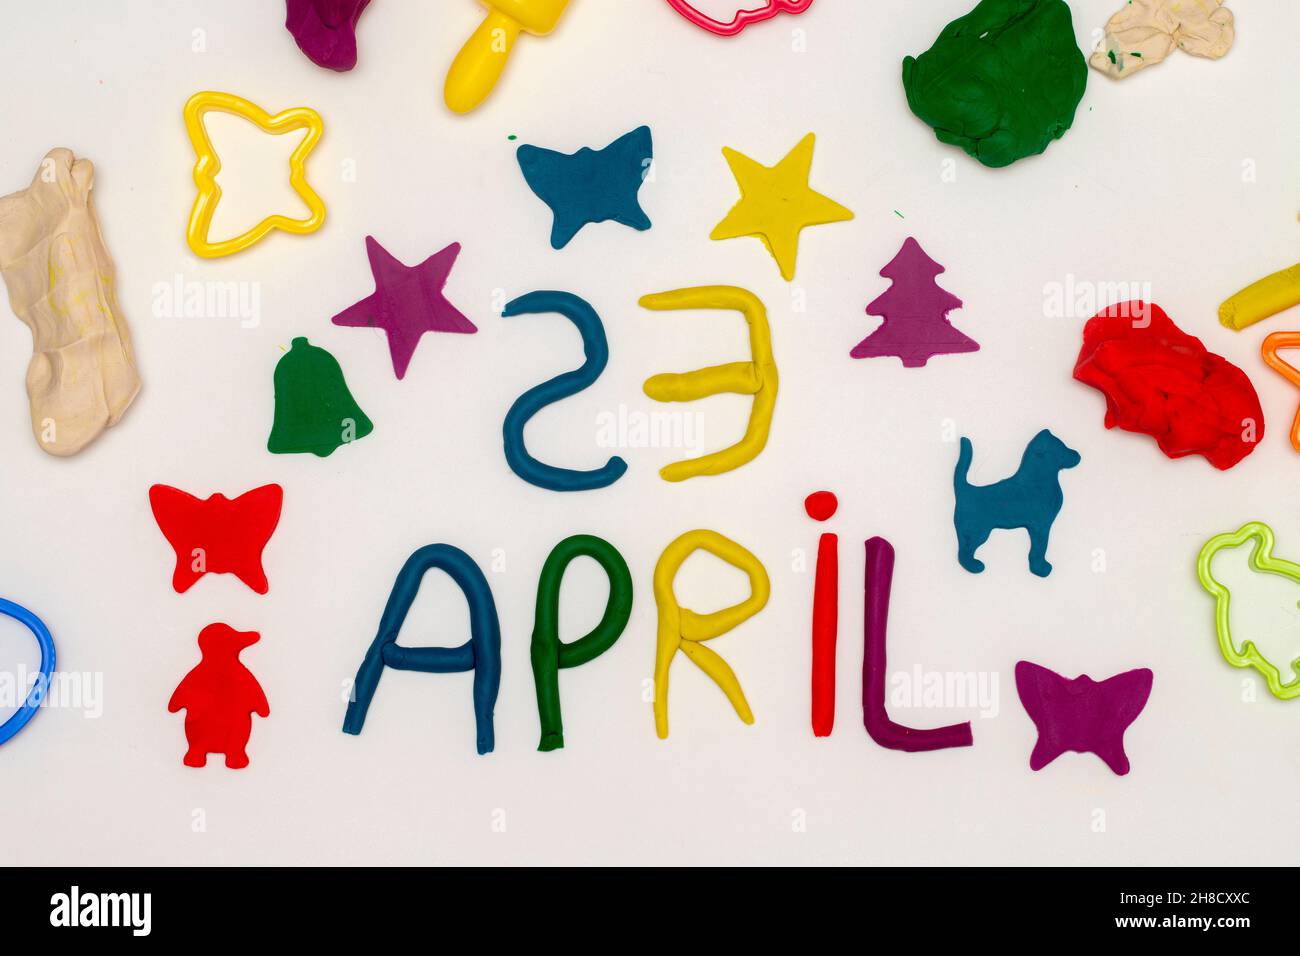 23 avril inscription et chiffres écrits avec de la pâte sur fond blanc.23 avril journée mondiale des enfants Banque D'Images